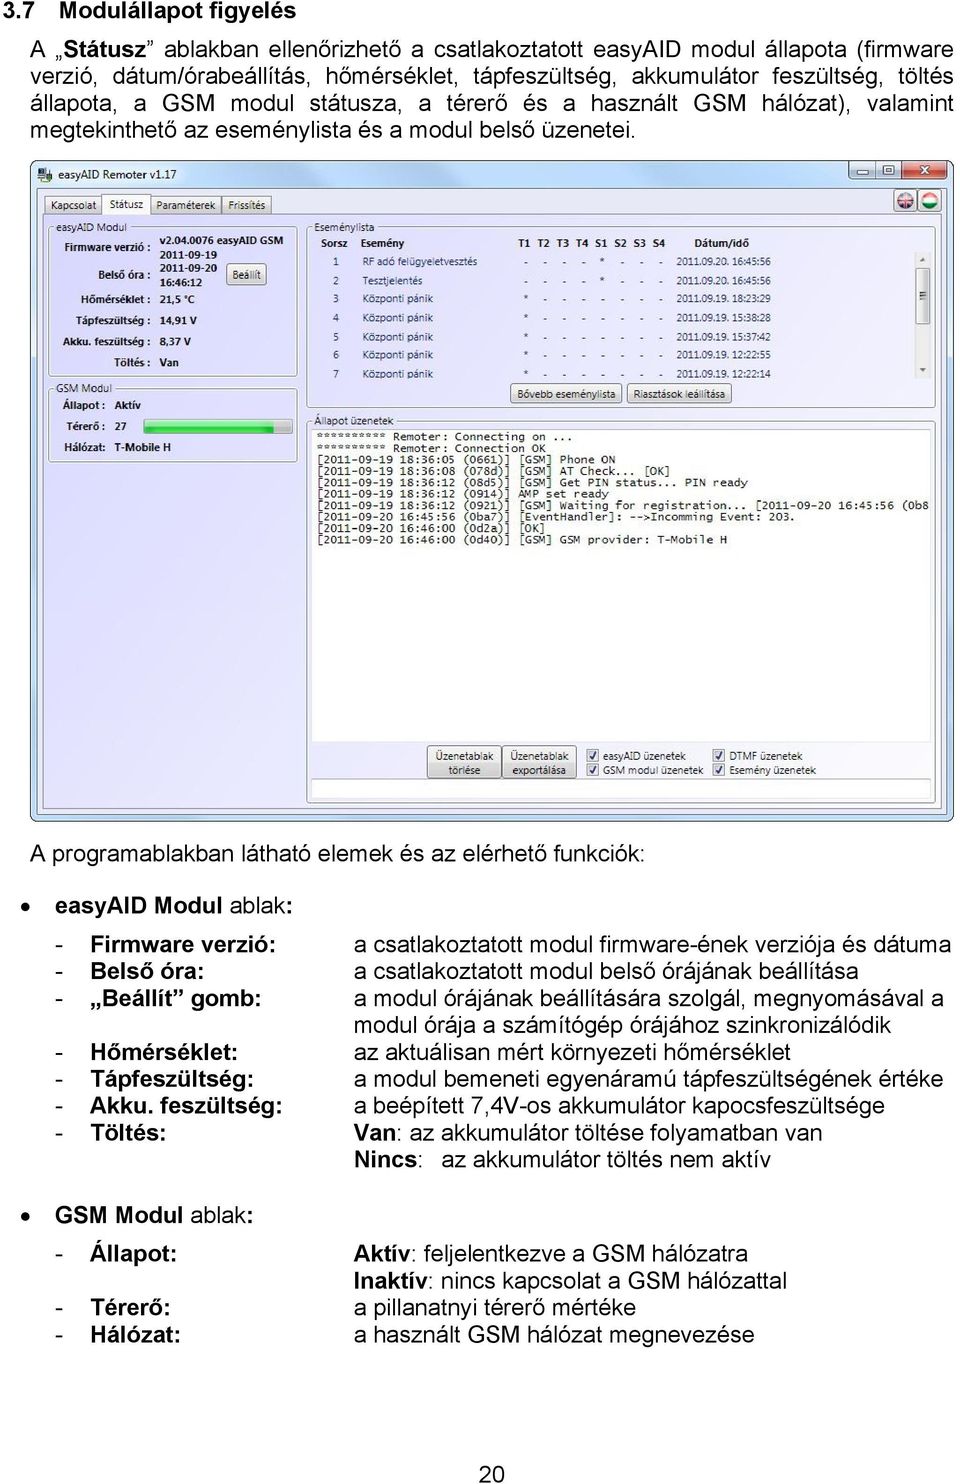 A programablakban látható elemek és az elérhető funkciók: easyaid Modul ablak: - Firmware verzió: a csatlakoztatott modul firmware-ének verziója és dátuma - Belső óra: a csatlakoztatott modul belső